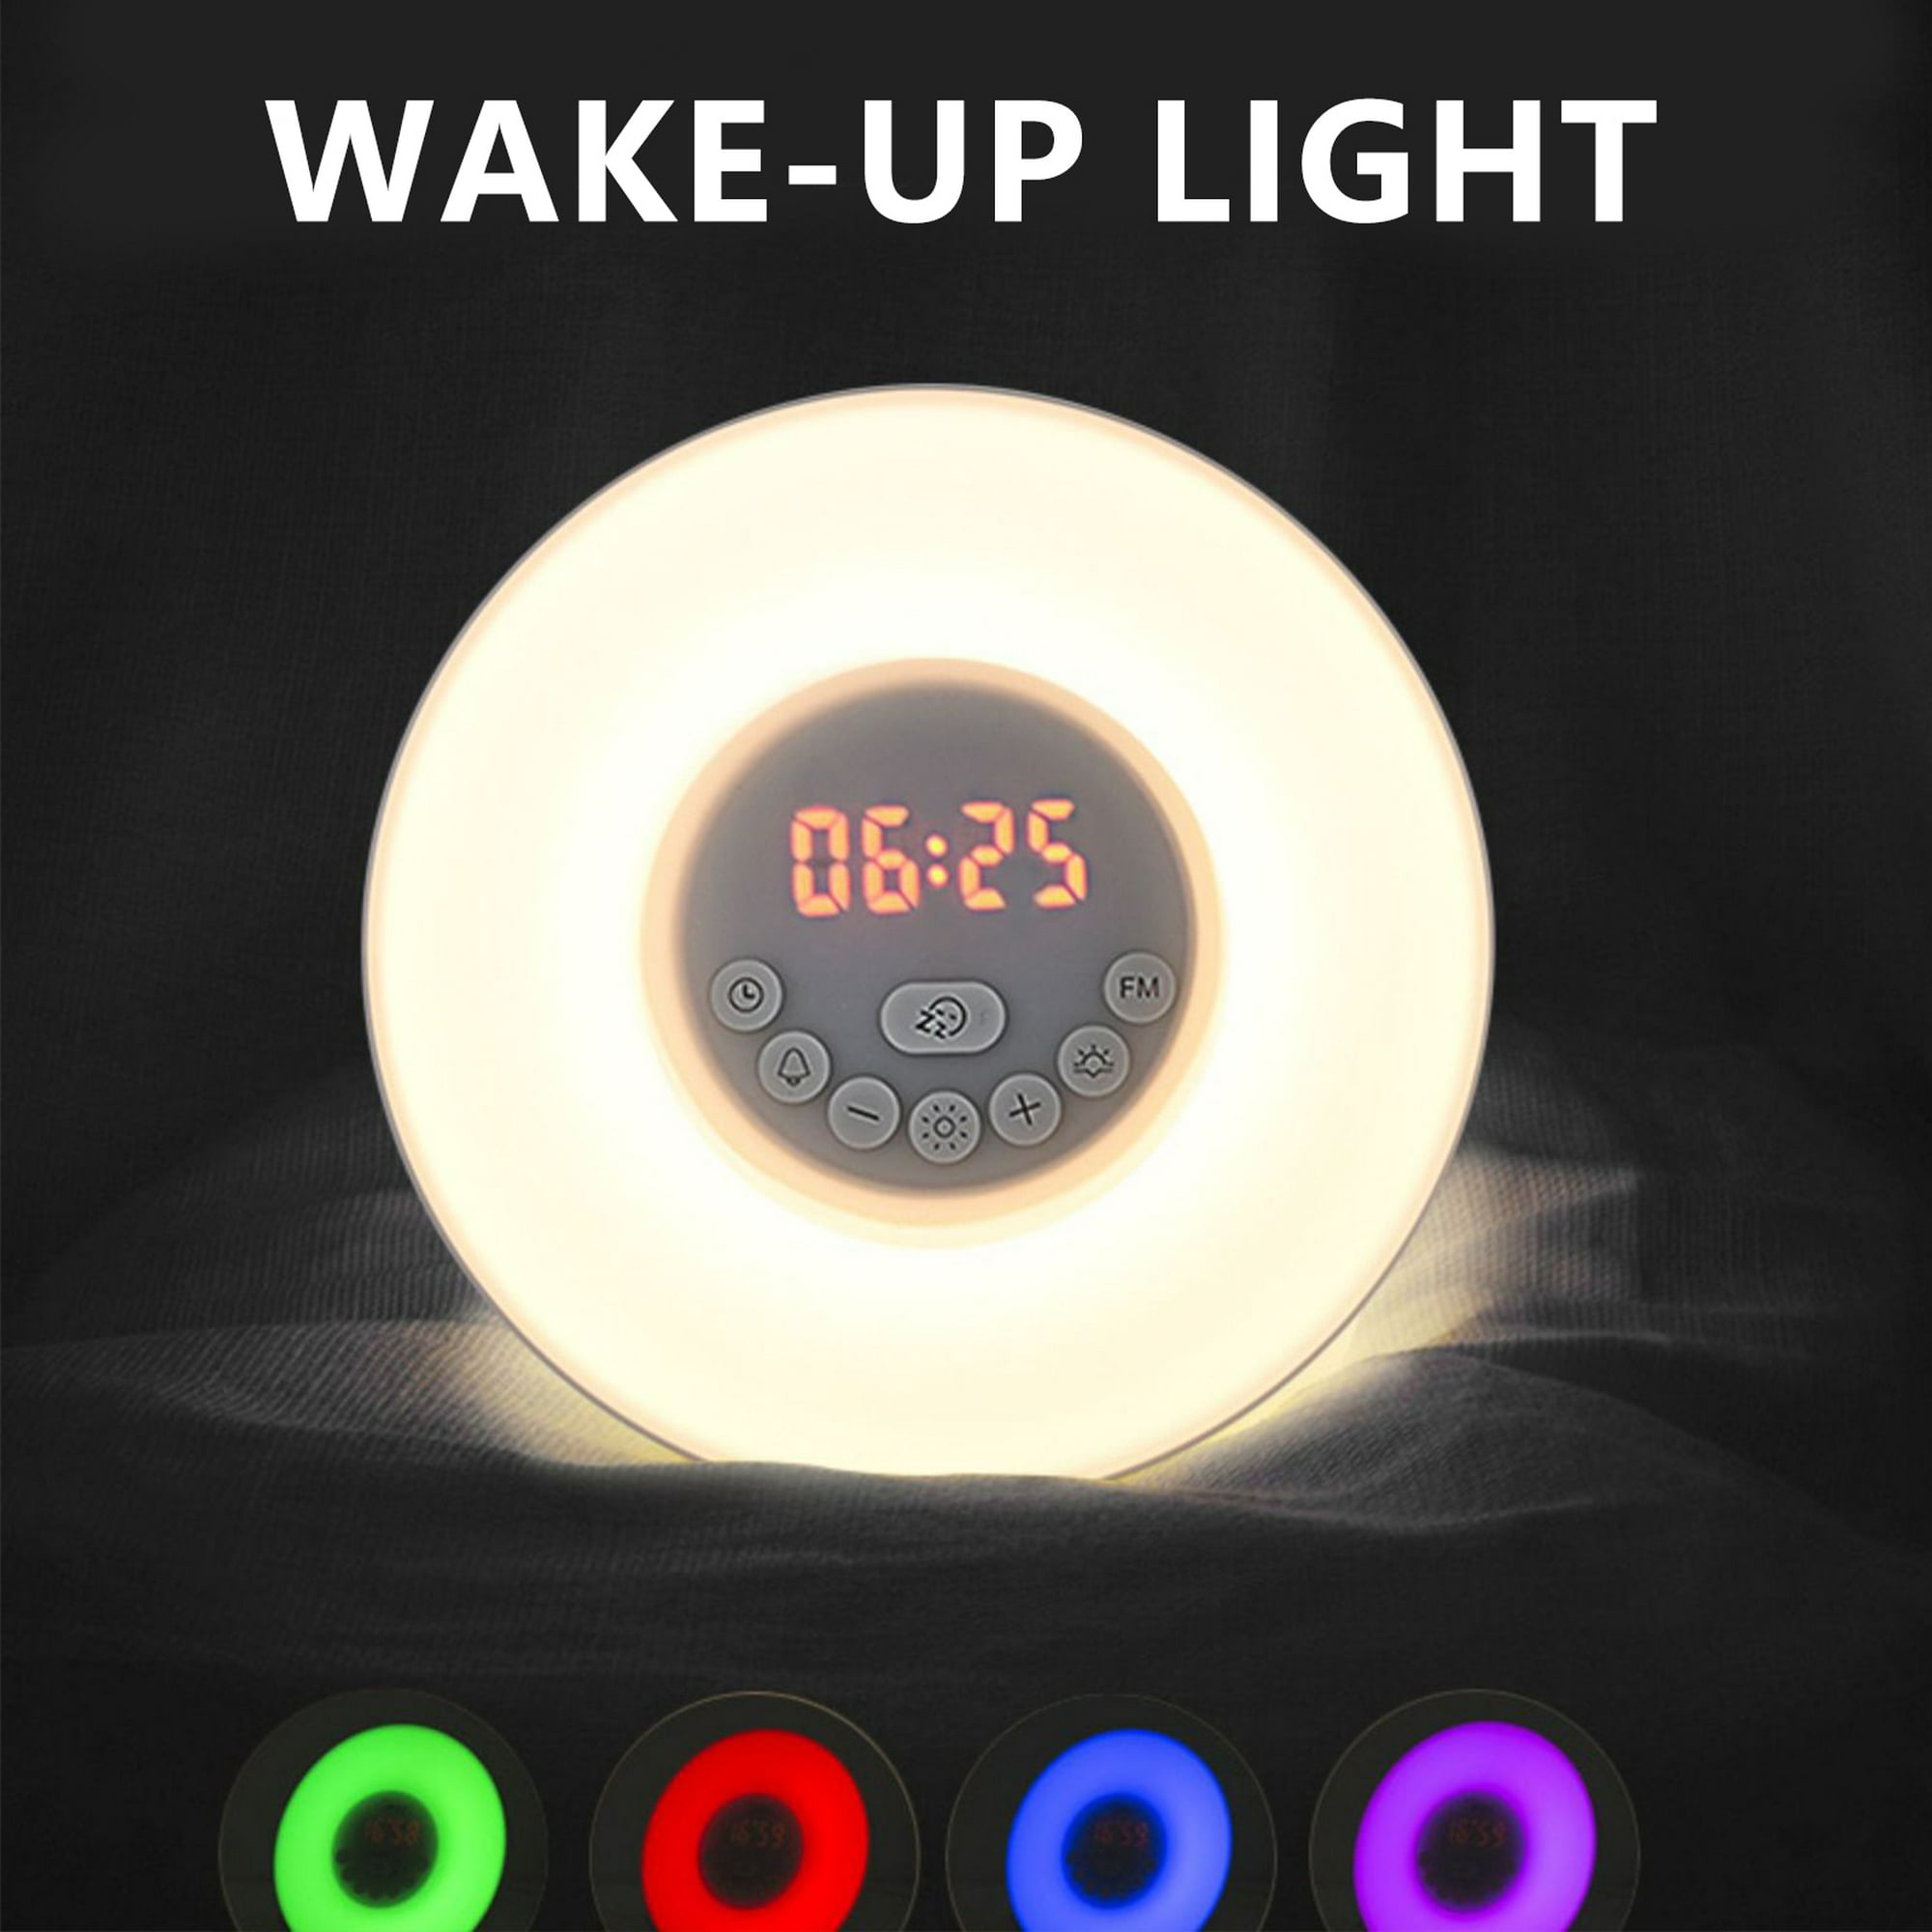 Reloj despertador al amanecer, smart wake up light funciona con